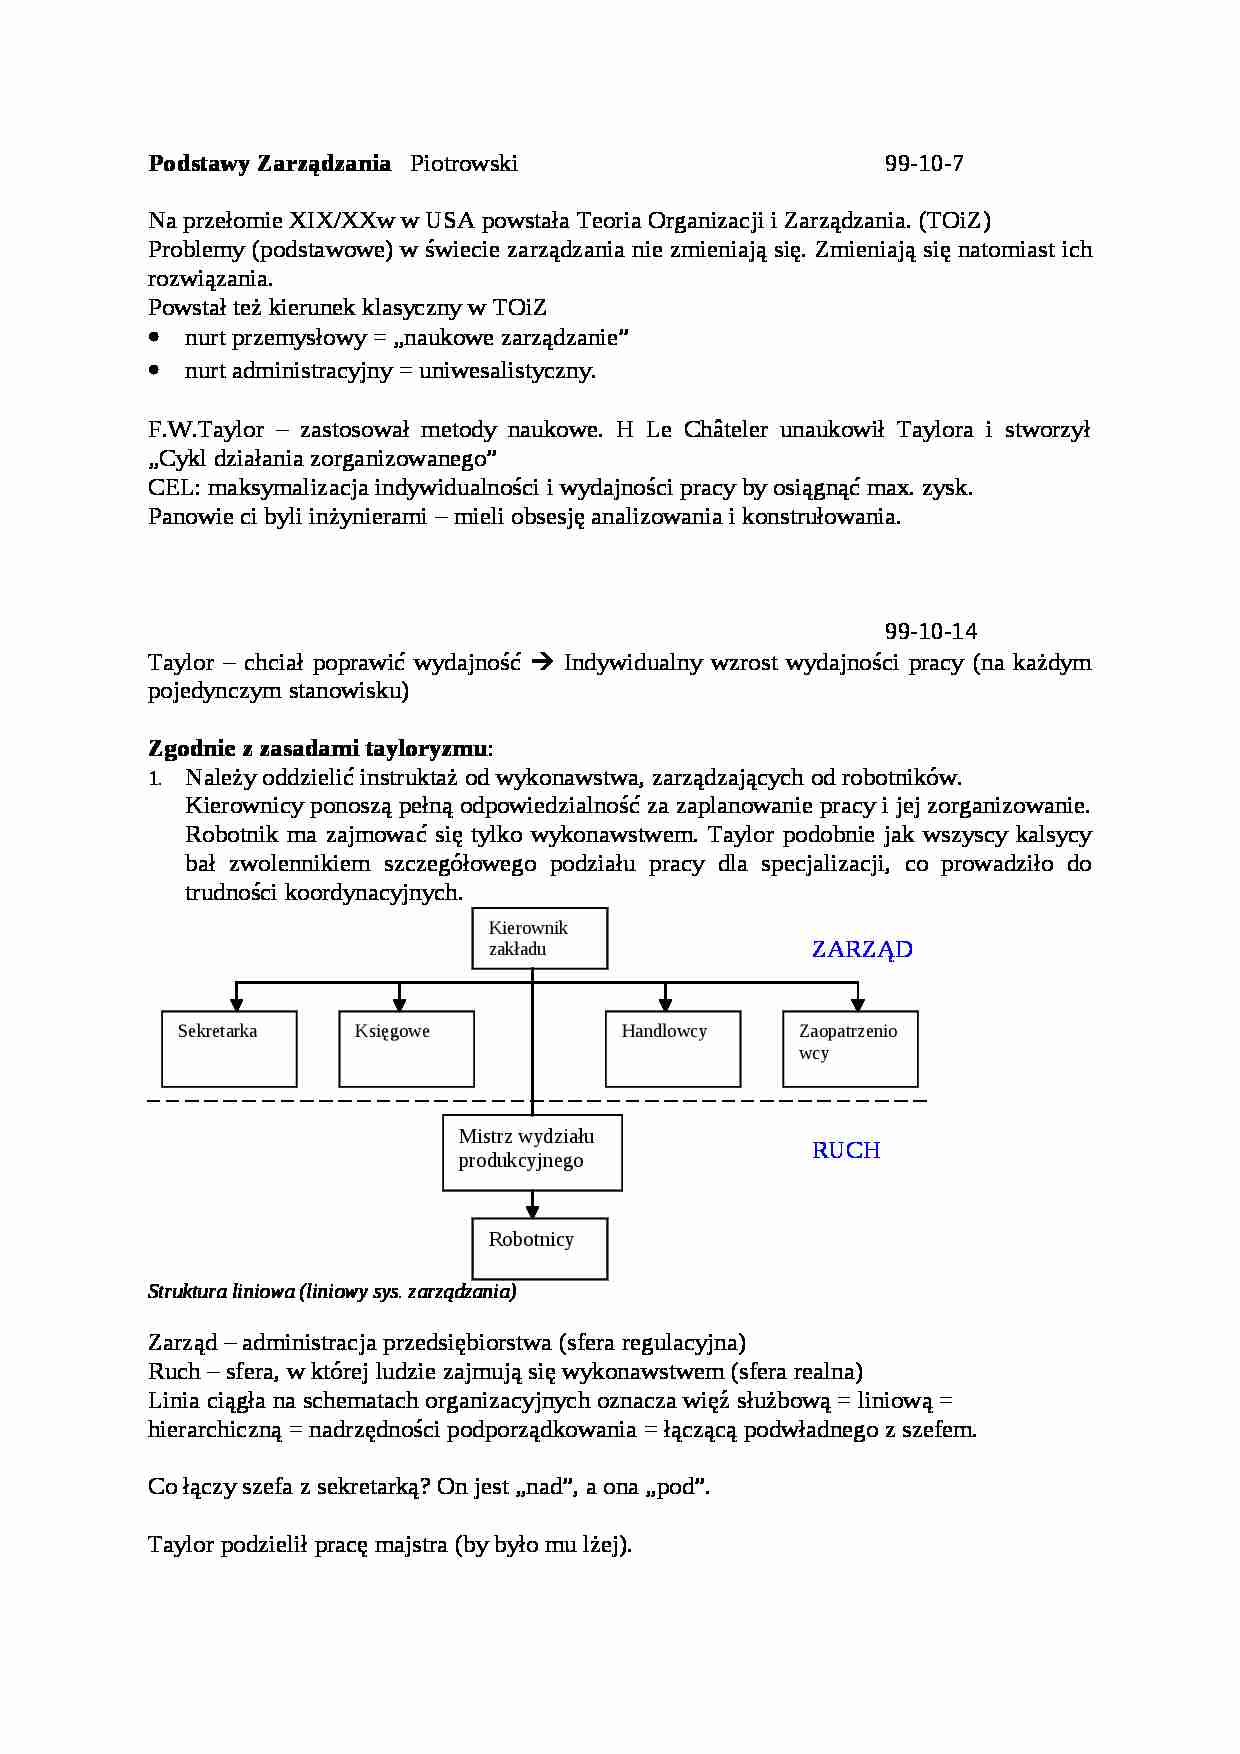 Podstawy zarządzania - wykłady - strona 1